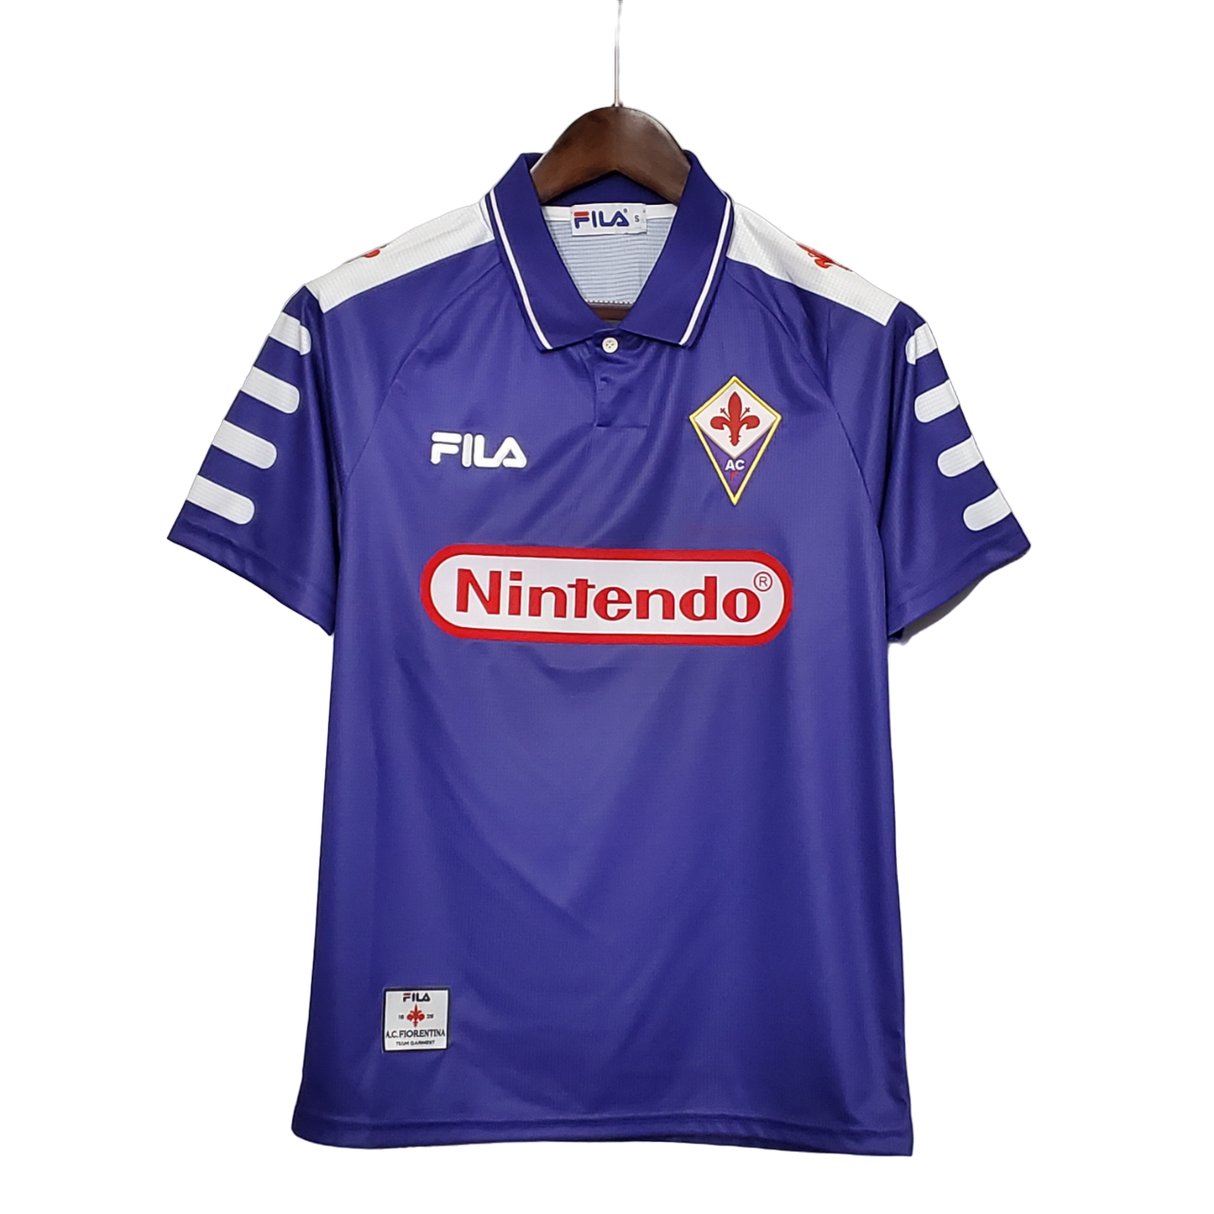 Fiorentina Retro 1998/99 Home